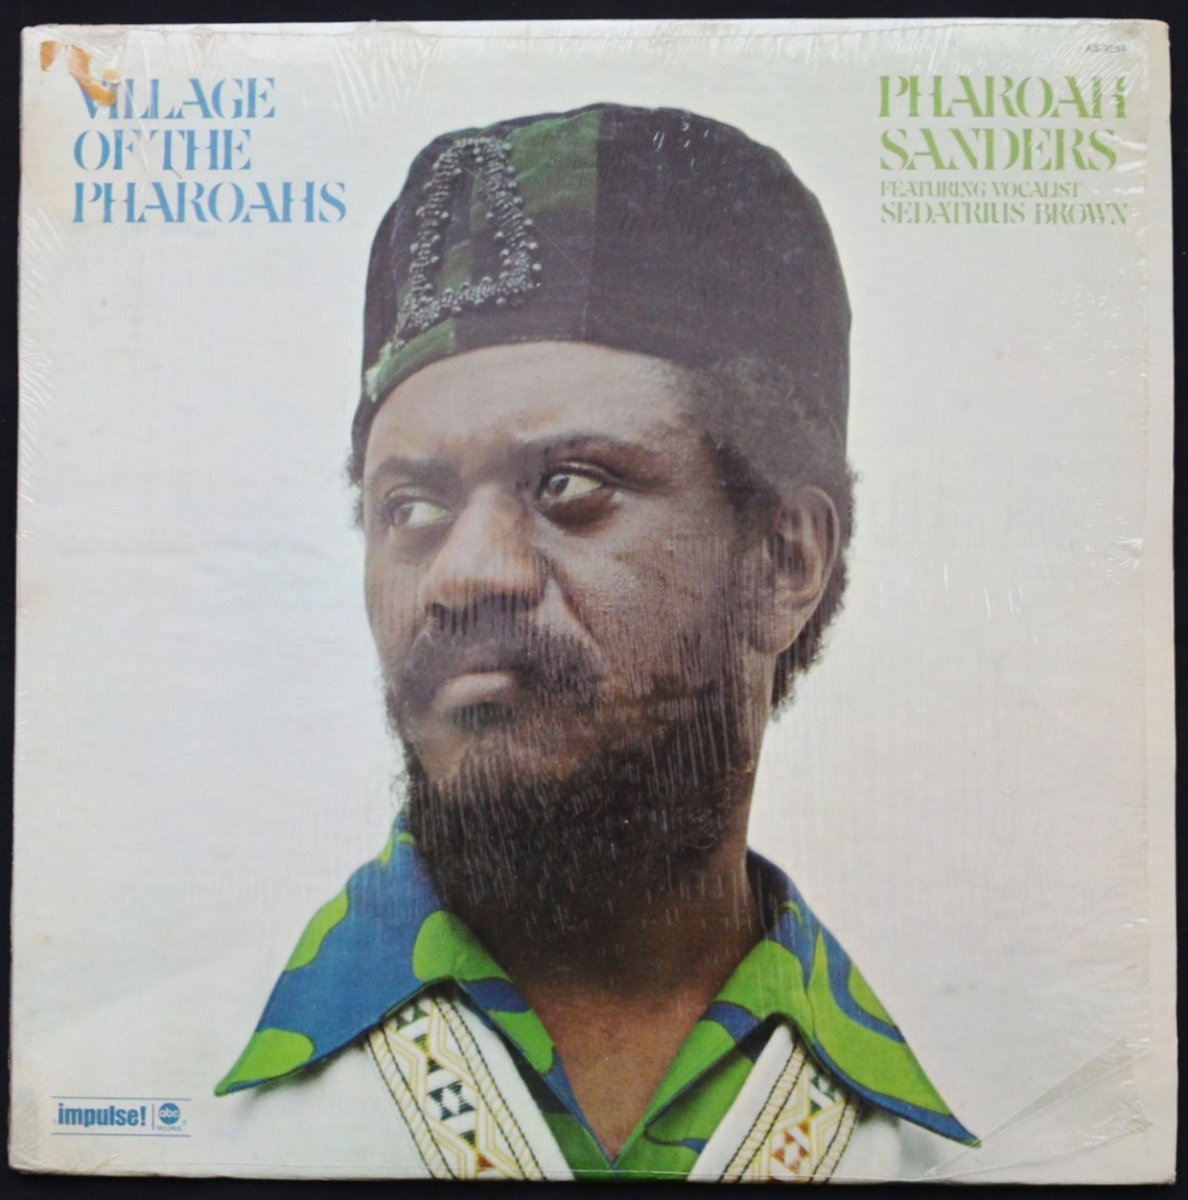 PHAROAH SANDERS FEATURING VOCALIST SEDATRIUS BROWN / VILLAGE OF THE PHAROAHS (LP)